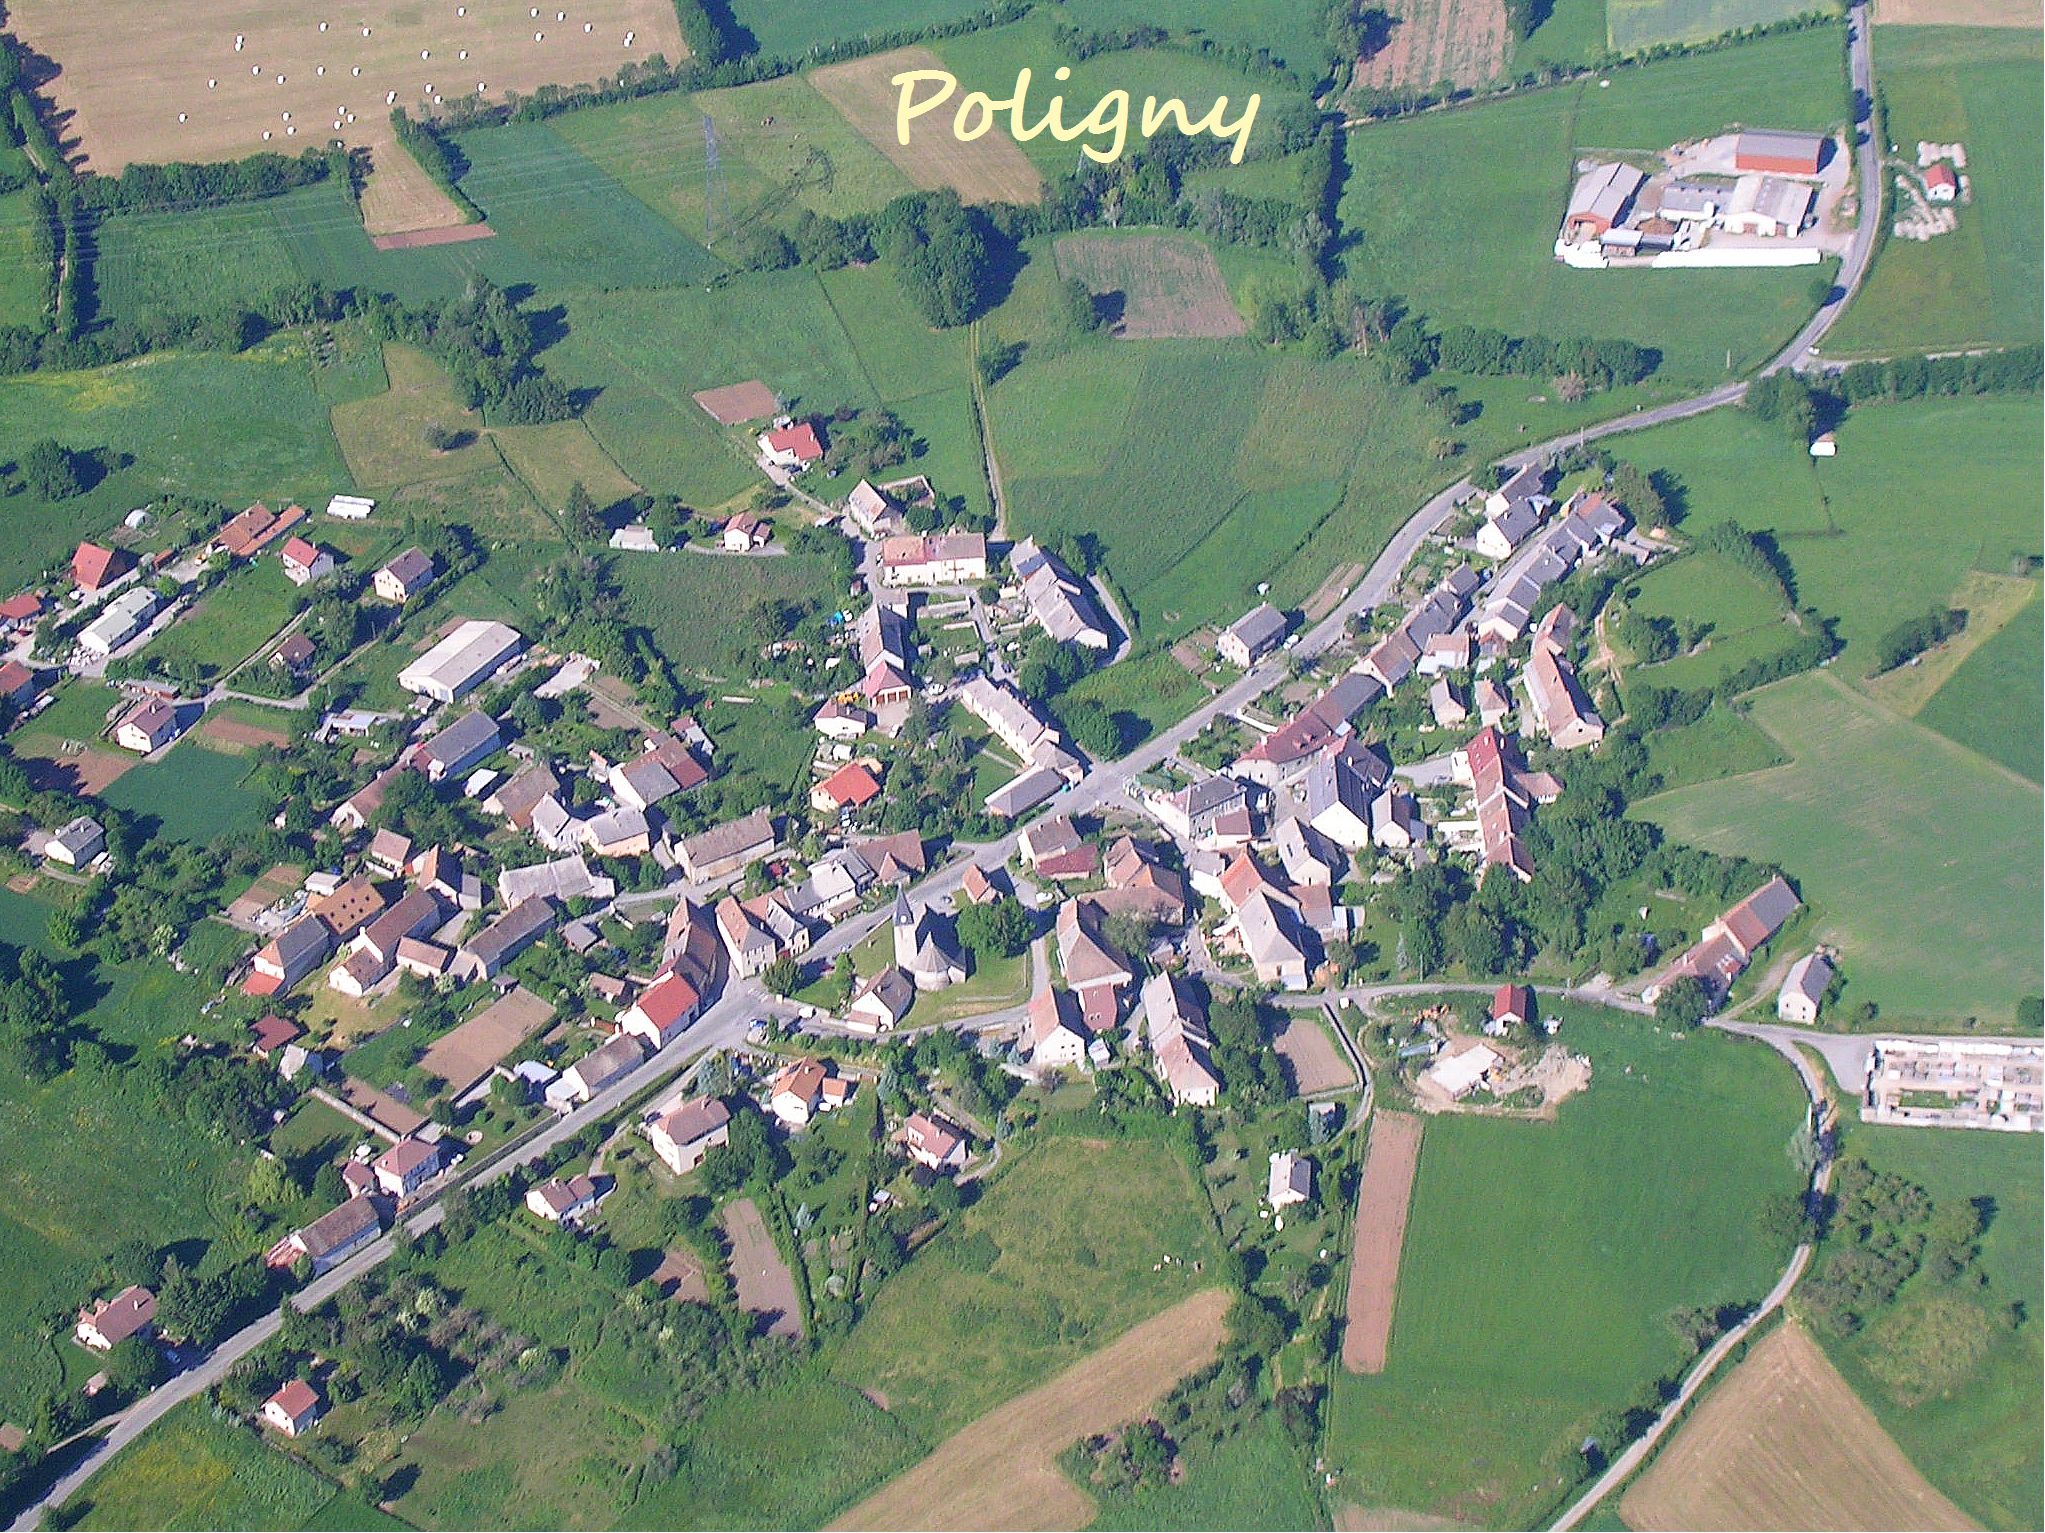 Poligny